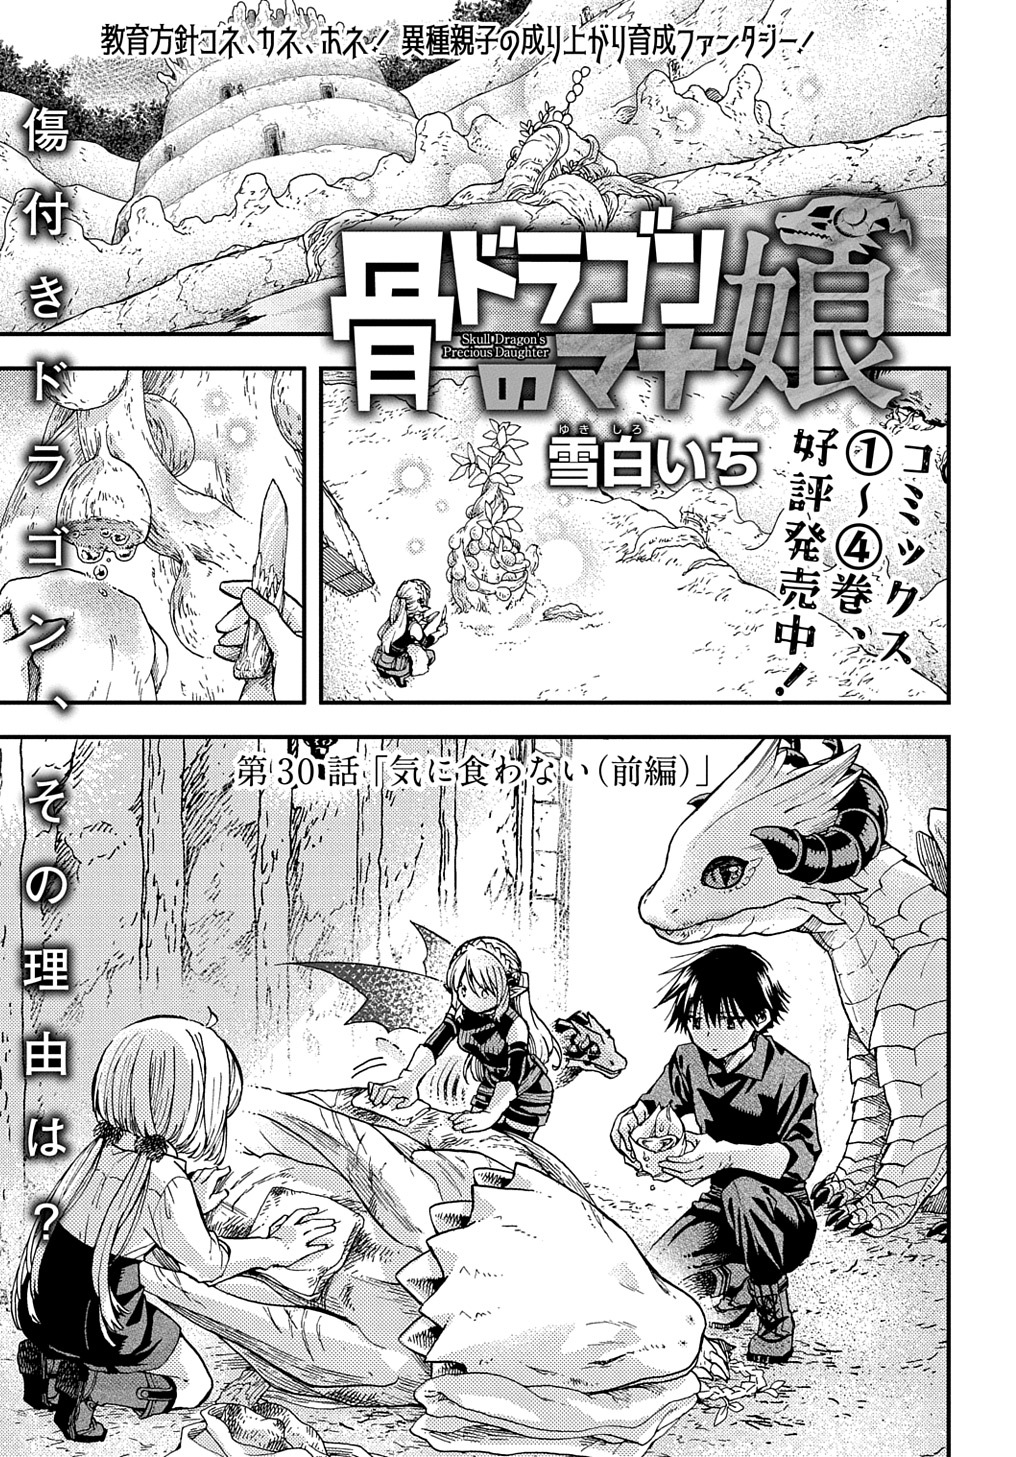 Hone Dragon no Mana Musume - Chapter 30.1 - Page 1